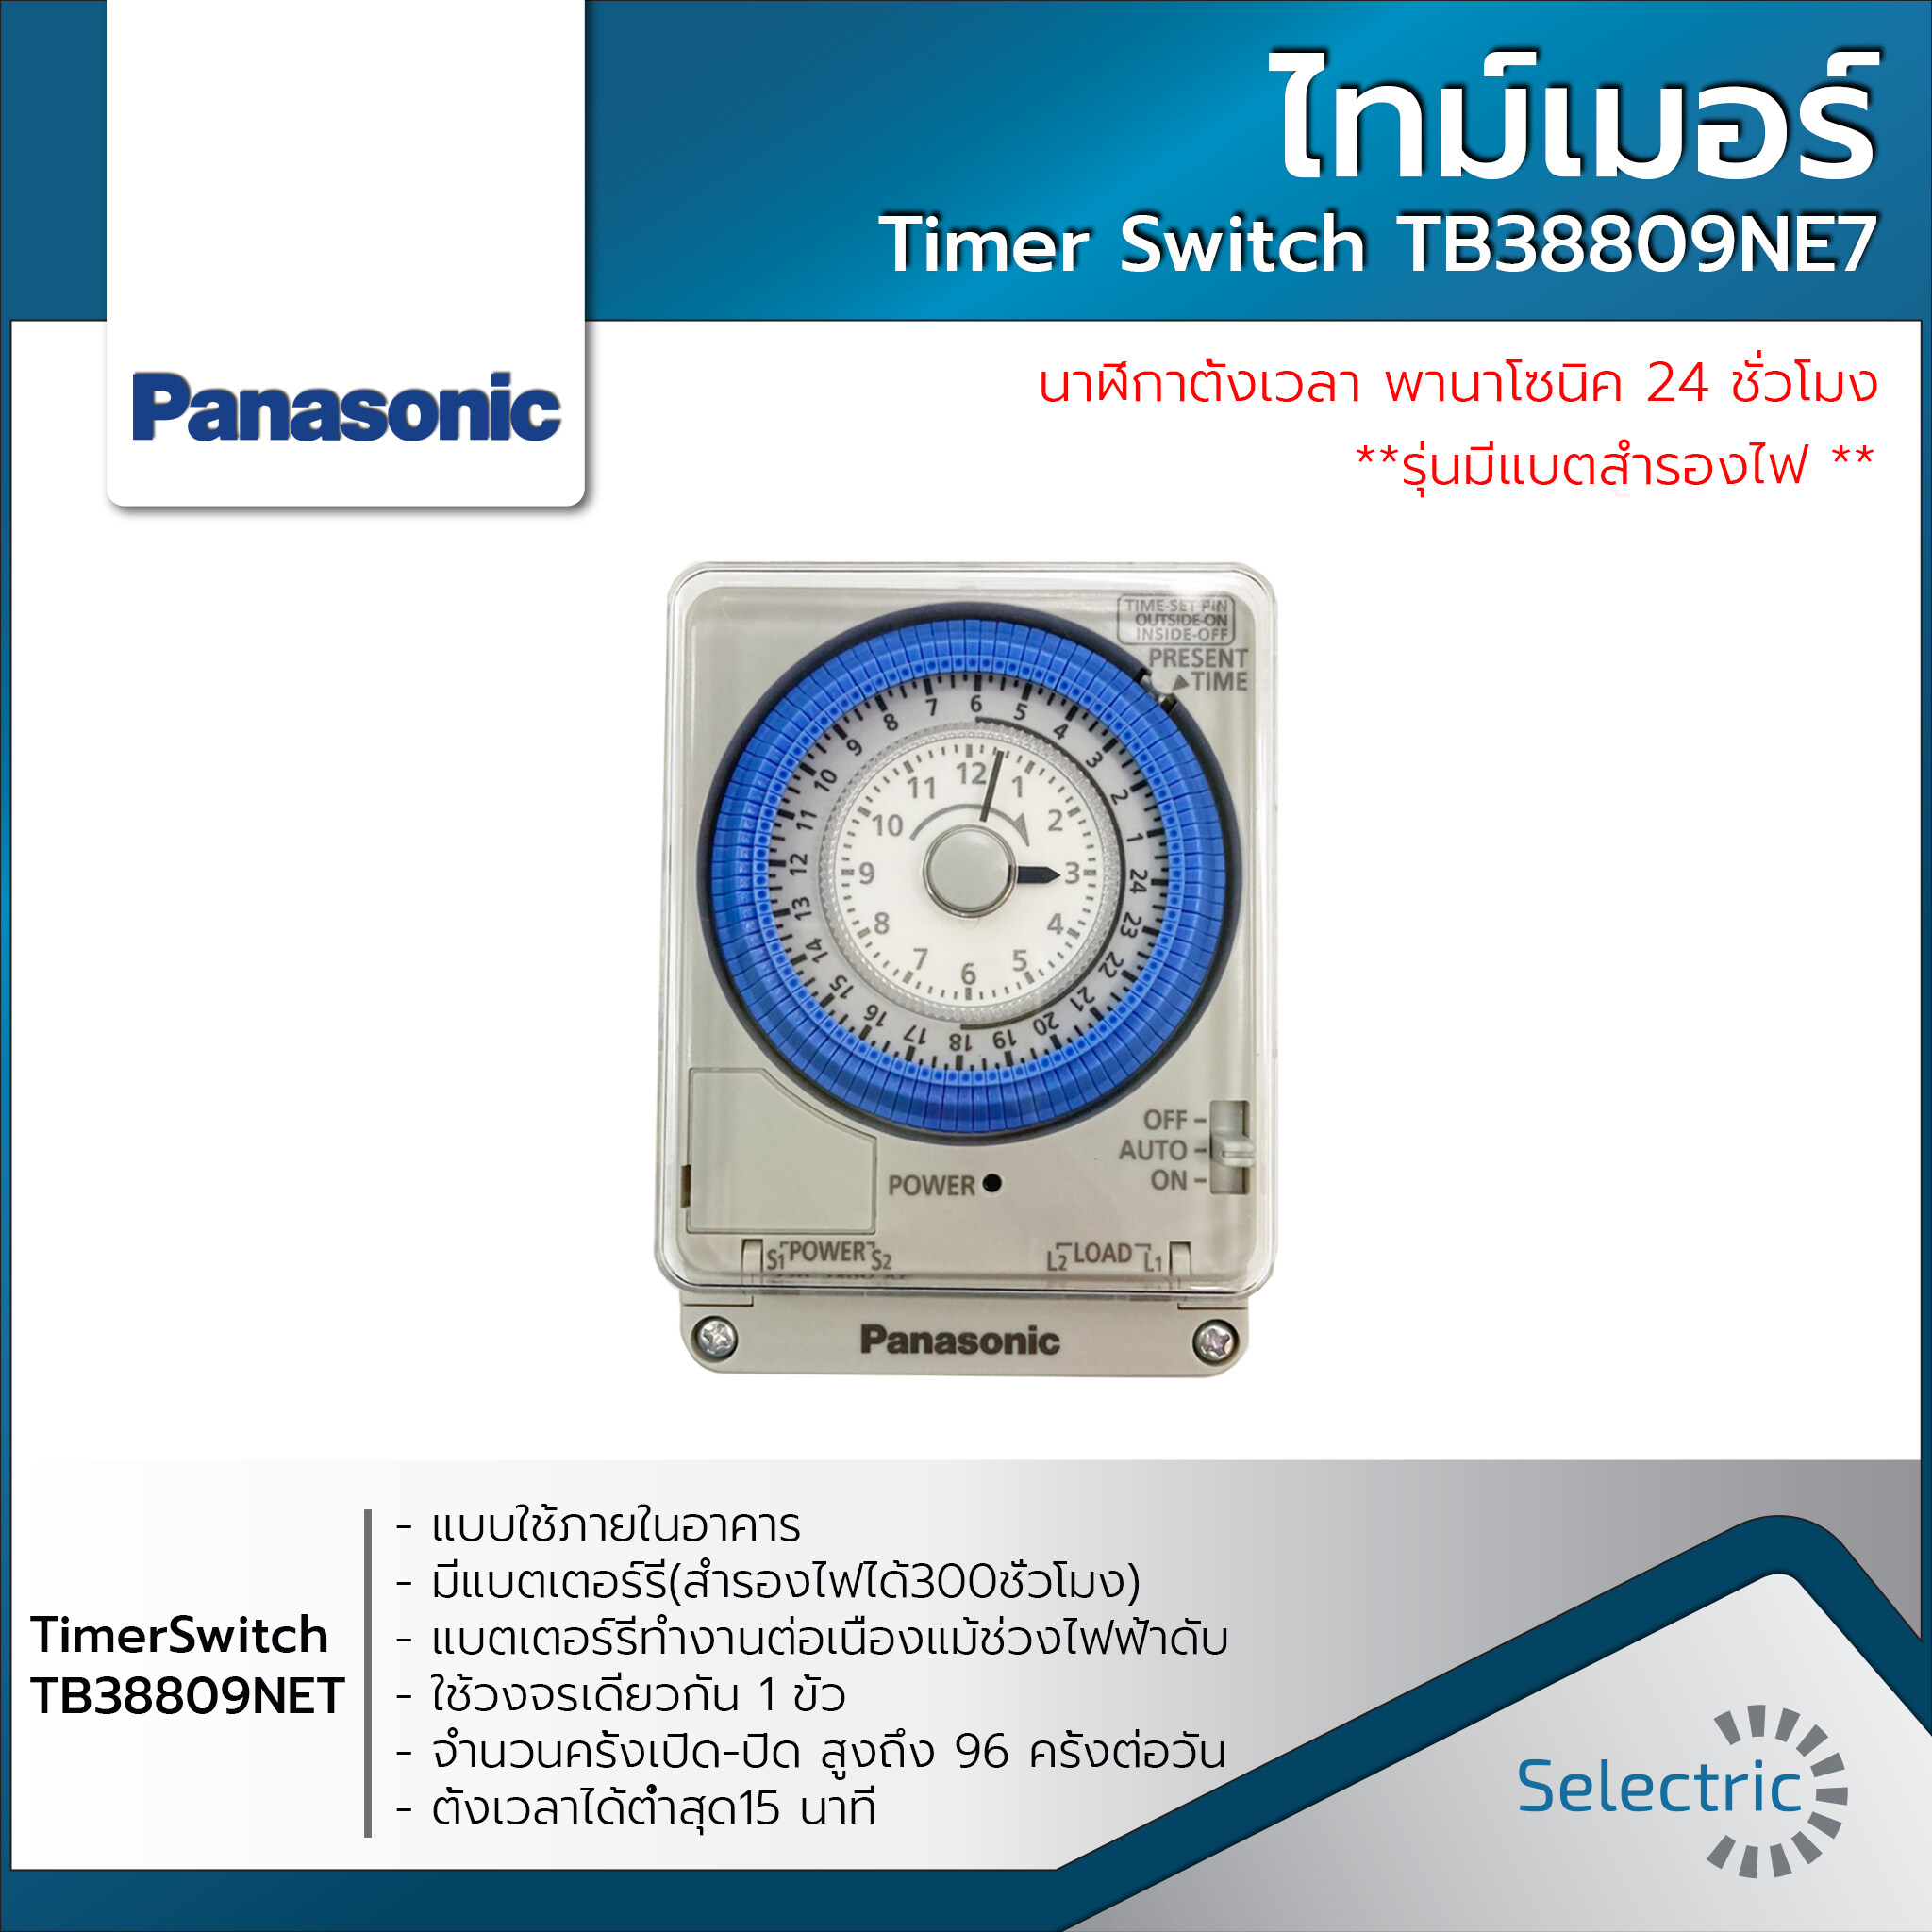 Panasonic ไทม์เมอร์ นาฬิกาตั้งเวลา 24 ชม. (Timer Switch) รุ่นTB38809NE7 มีแบตสำรองไฟ ของแท้!!!